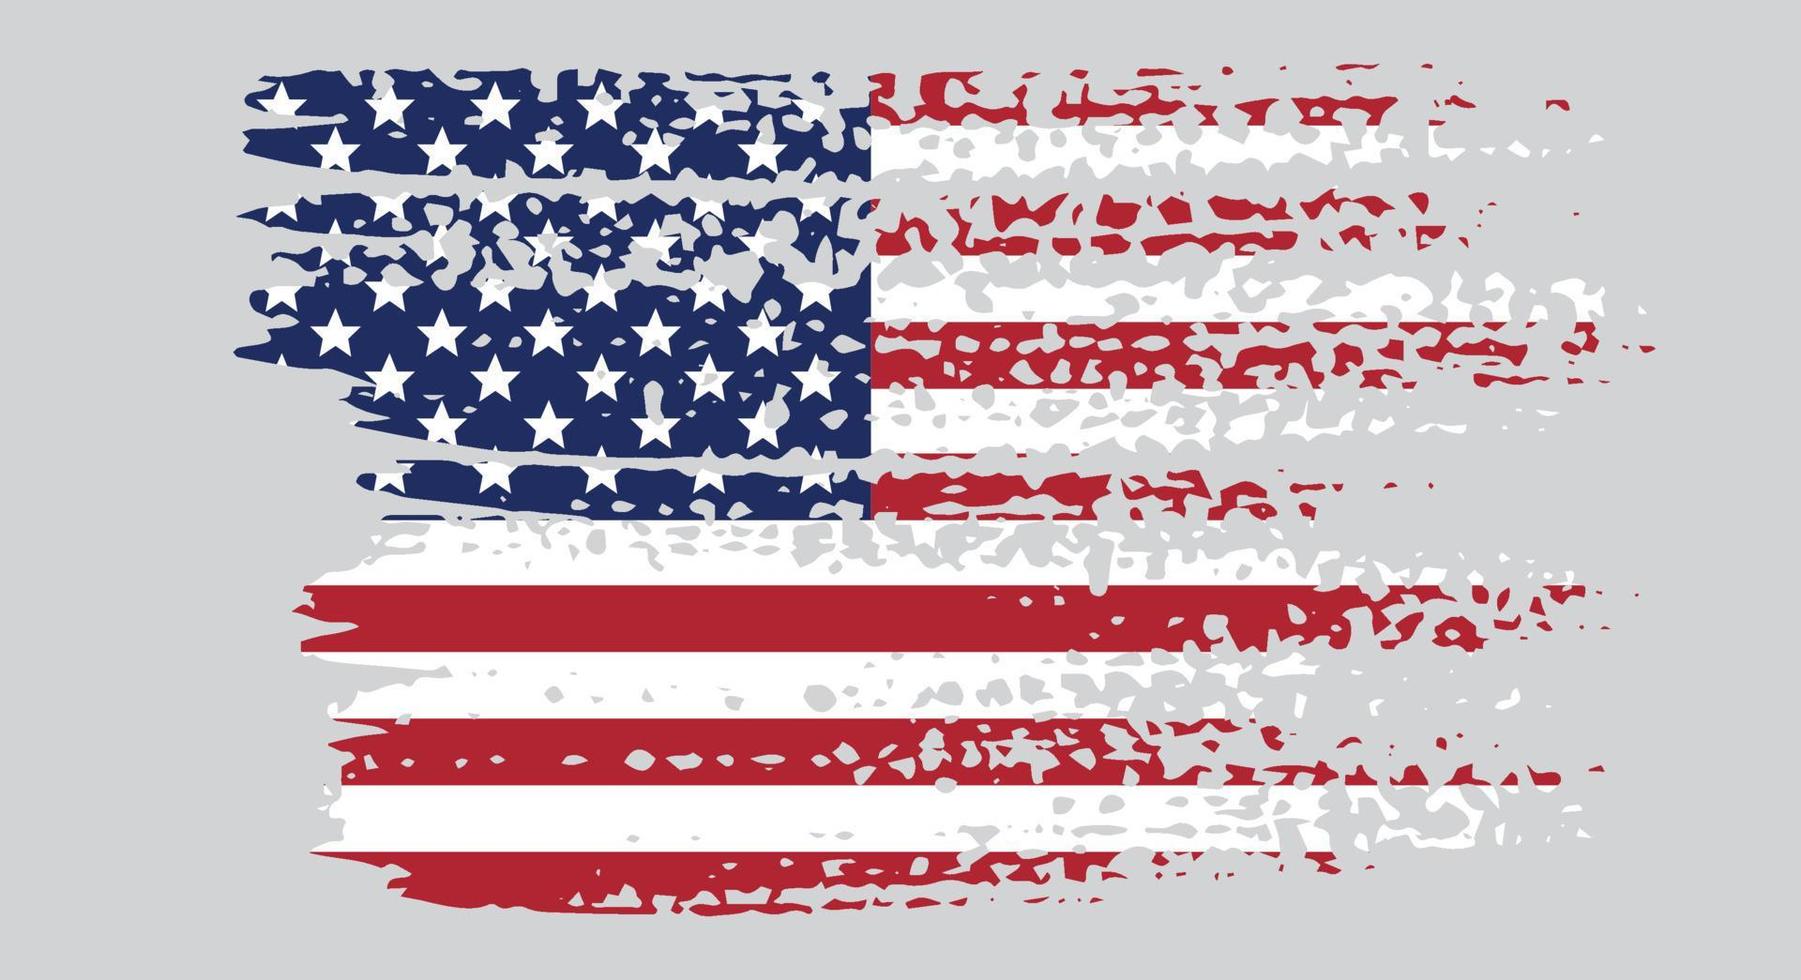 vector usa vlag. Amerikaanse vlag symbol.icon voor website of mobiele app